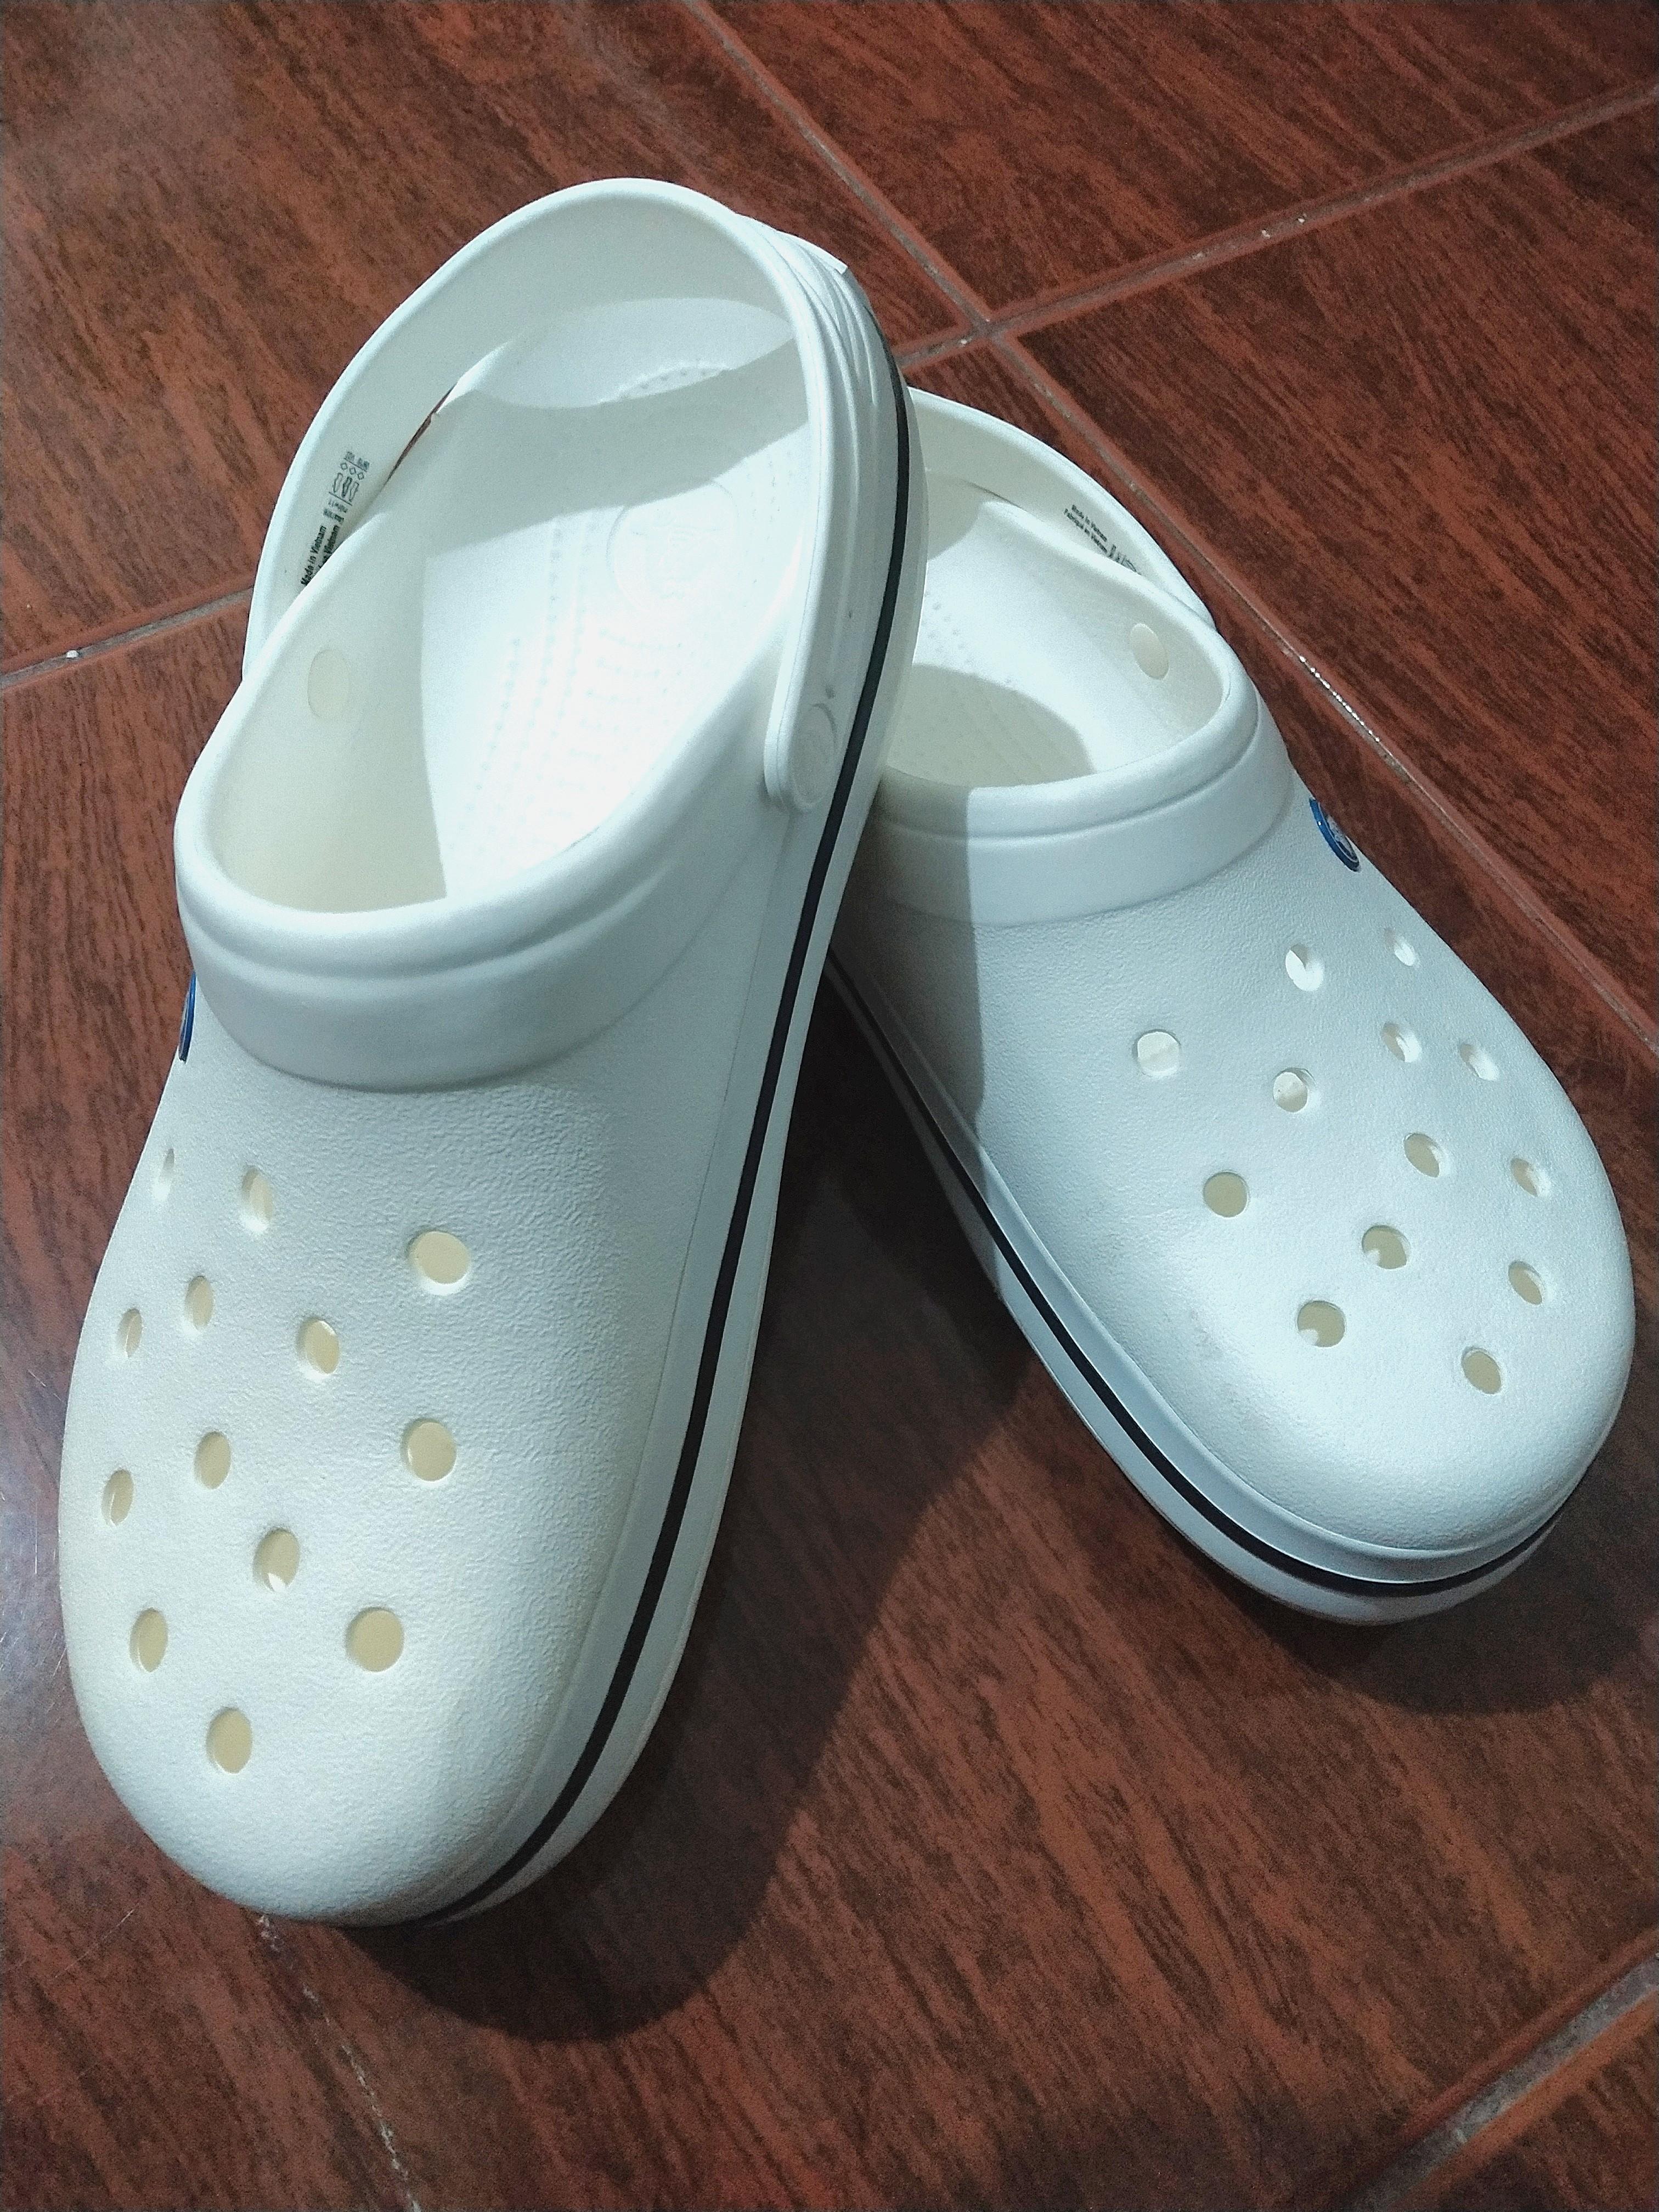 white crocs size 11